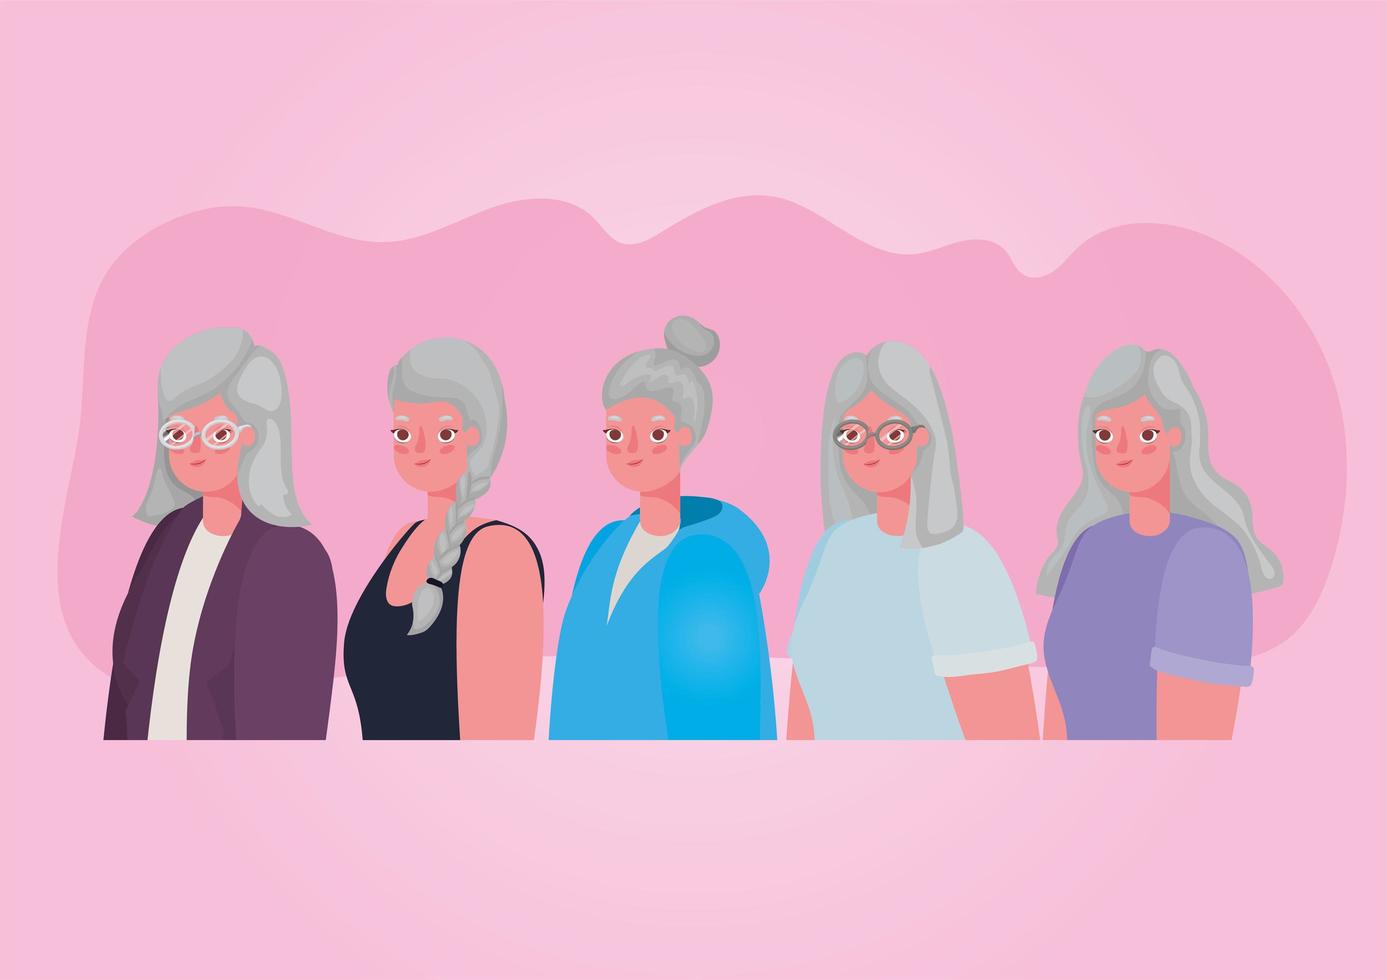 Senior citizen women profiles vector